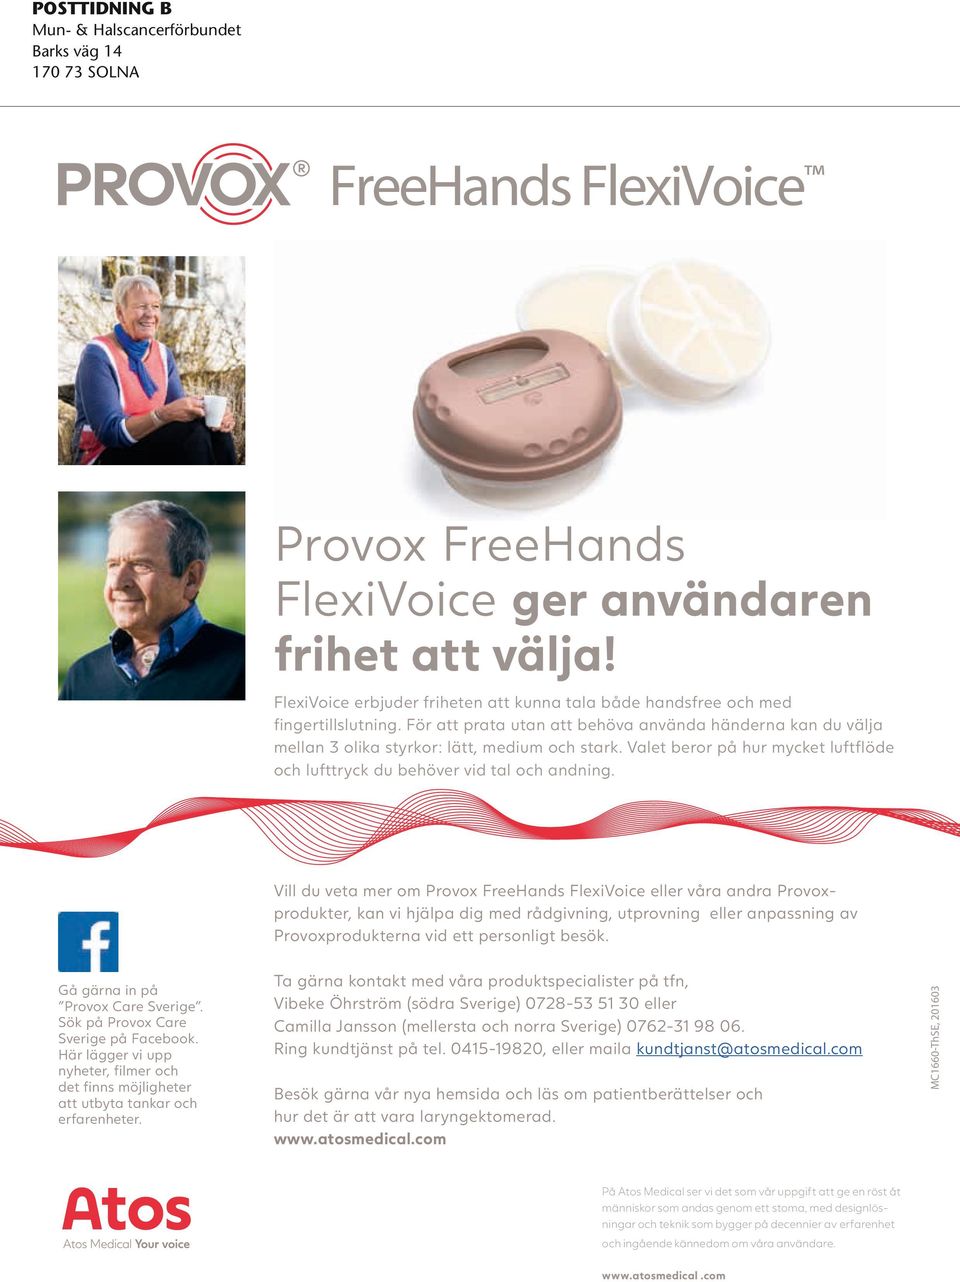 Valet beror på hur mycket luftflöde och lufttryck du behöver vid tal och andning. Gå gärna in på Provox Care Sverige. Sök på Provox Care Sverige på Facebook.